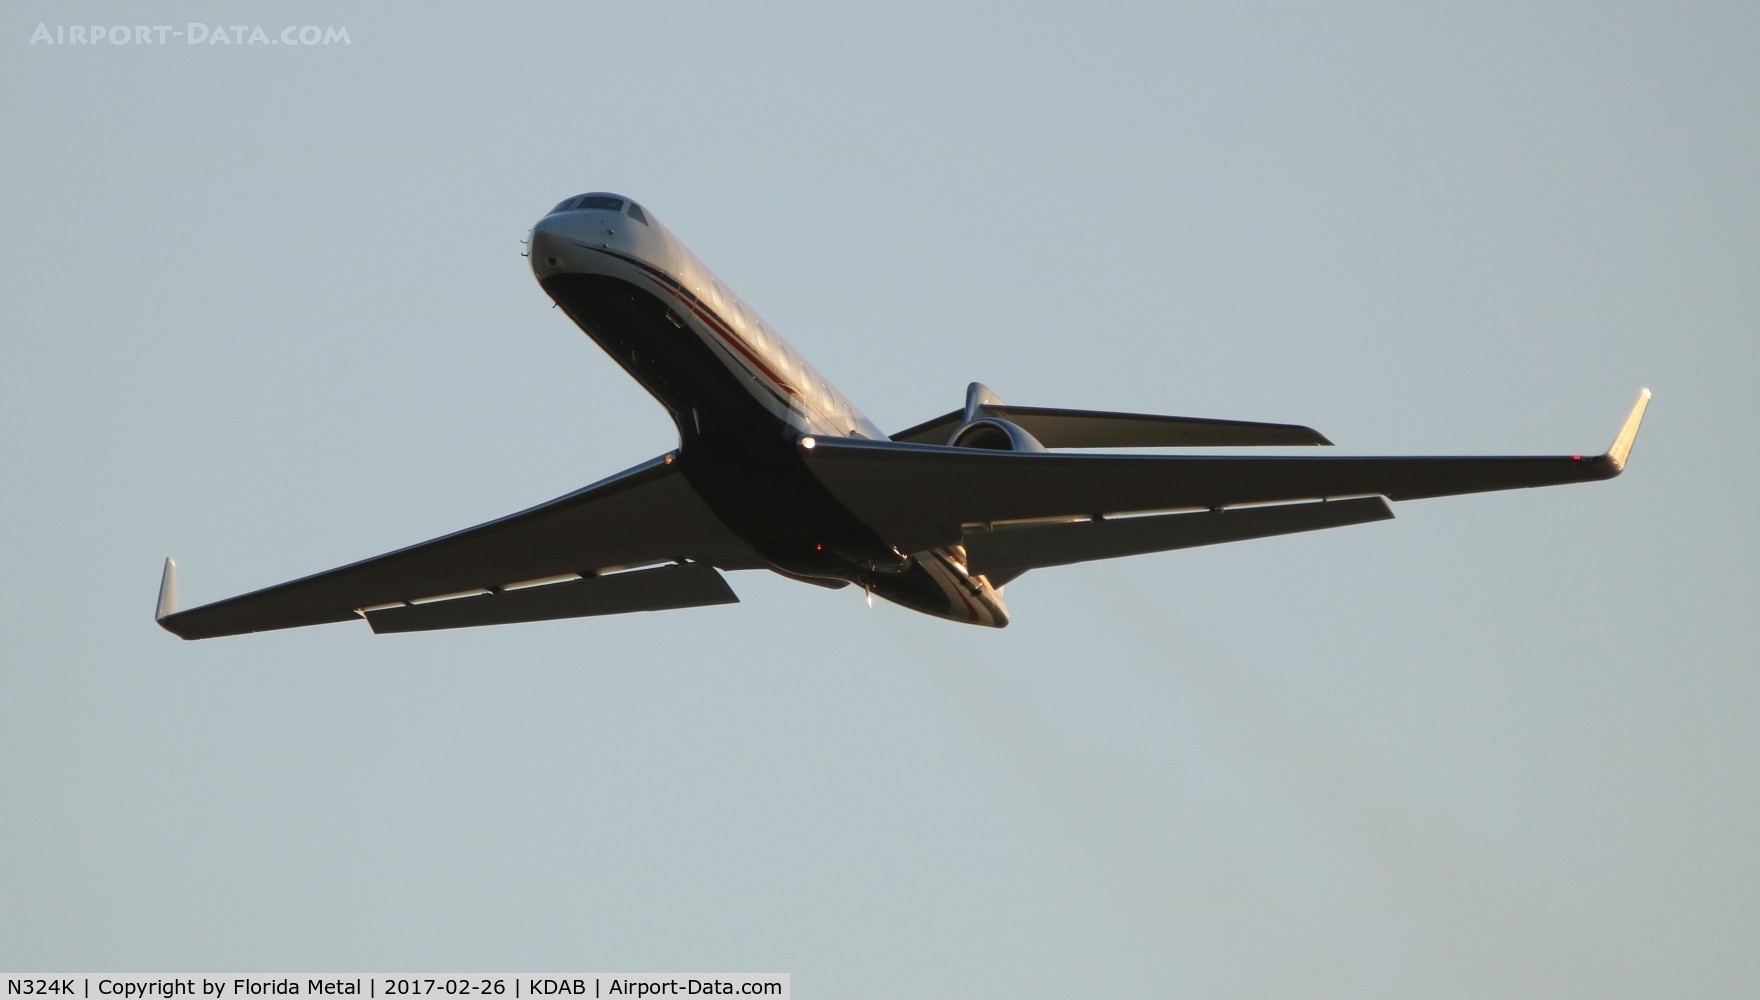 N324K, 2015 Gulfstream Aerospace GV-SP (G550) C/N 5516, G550 zx